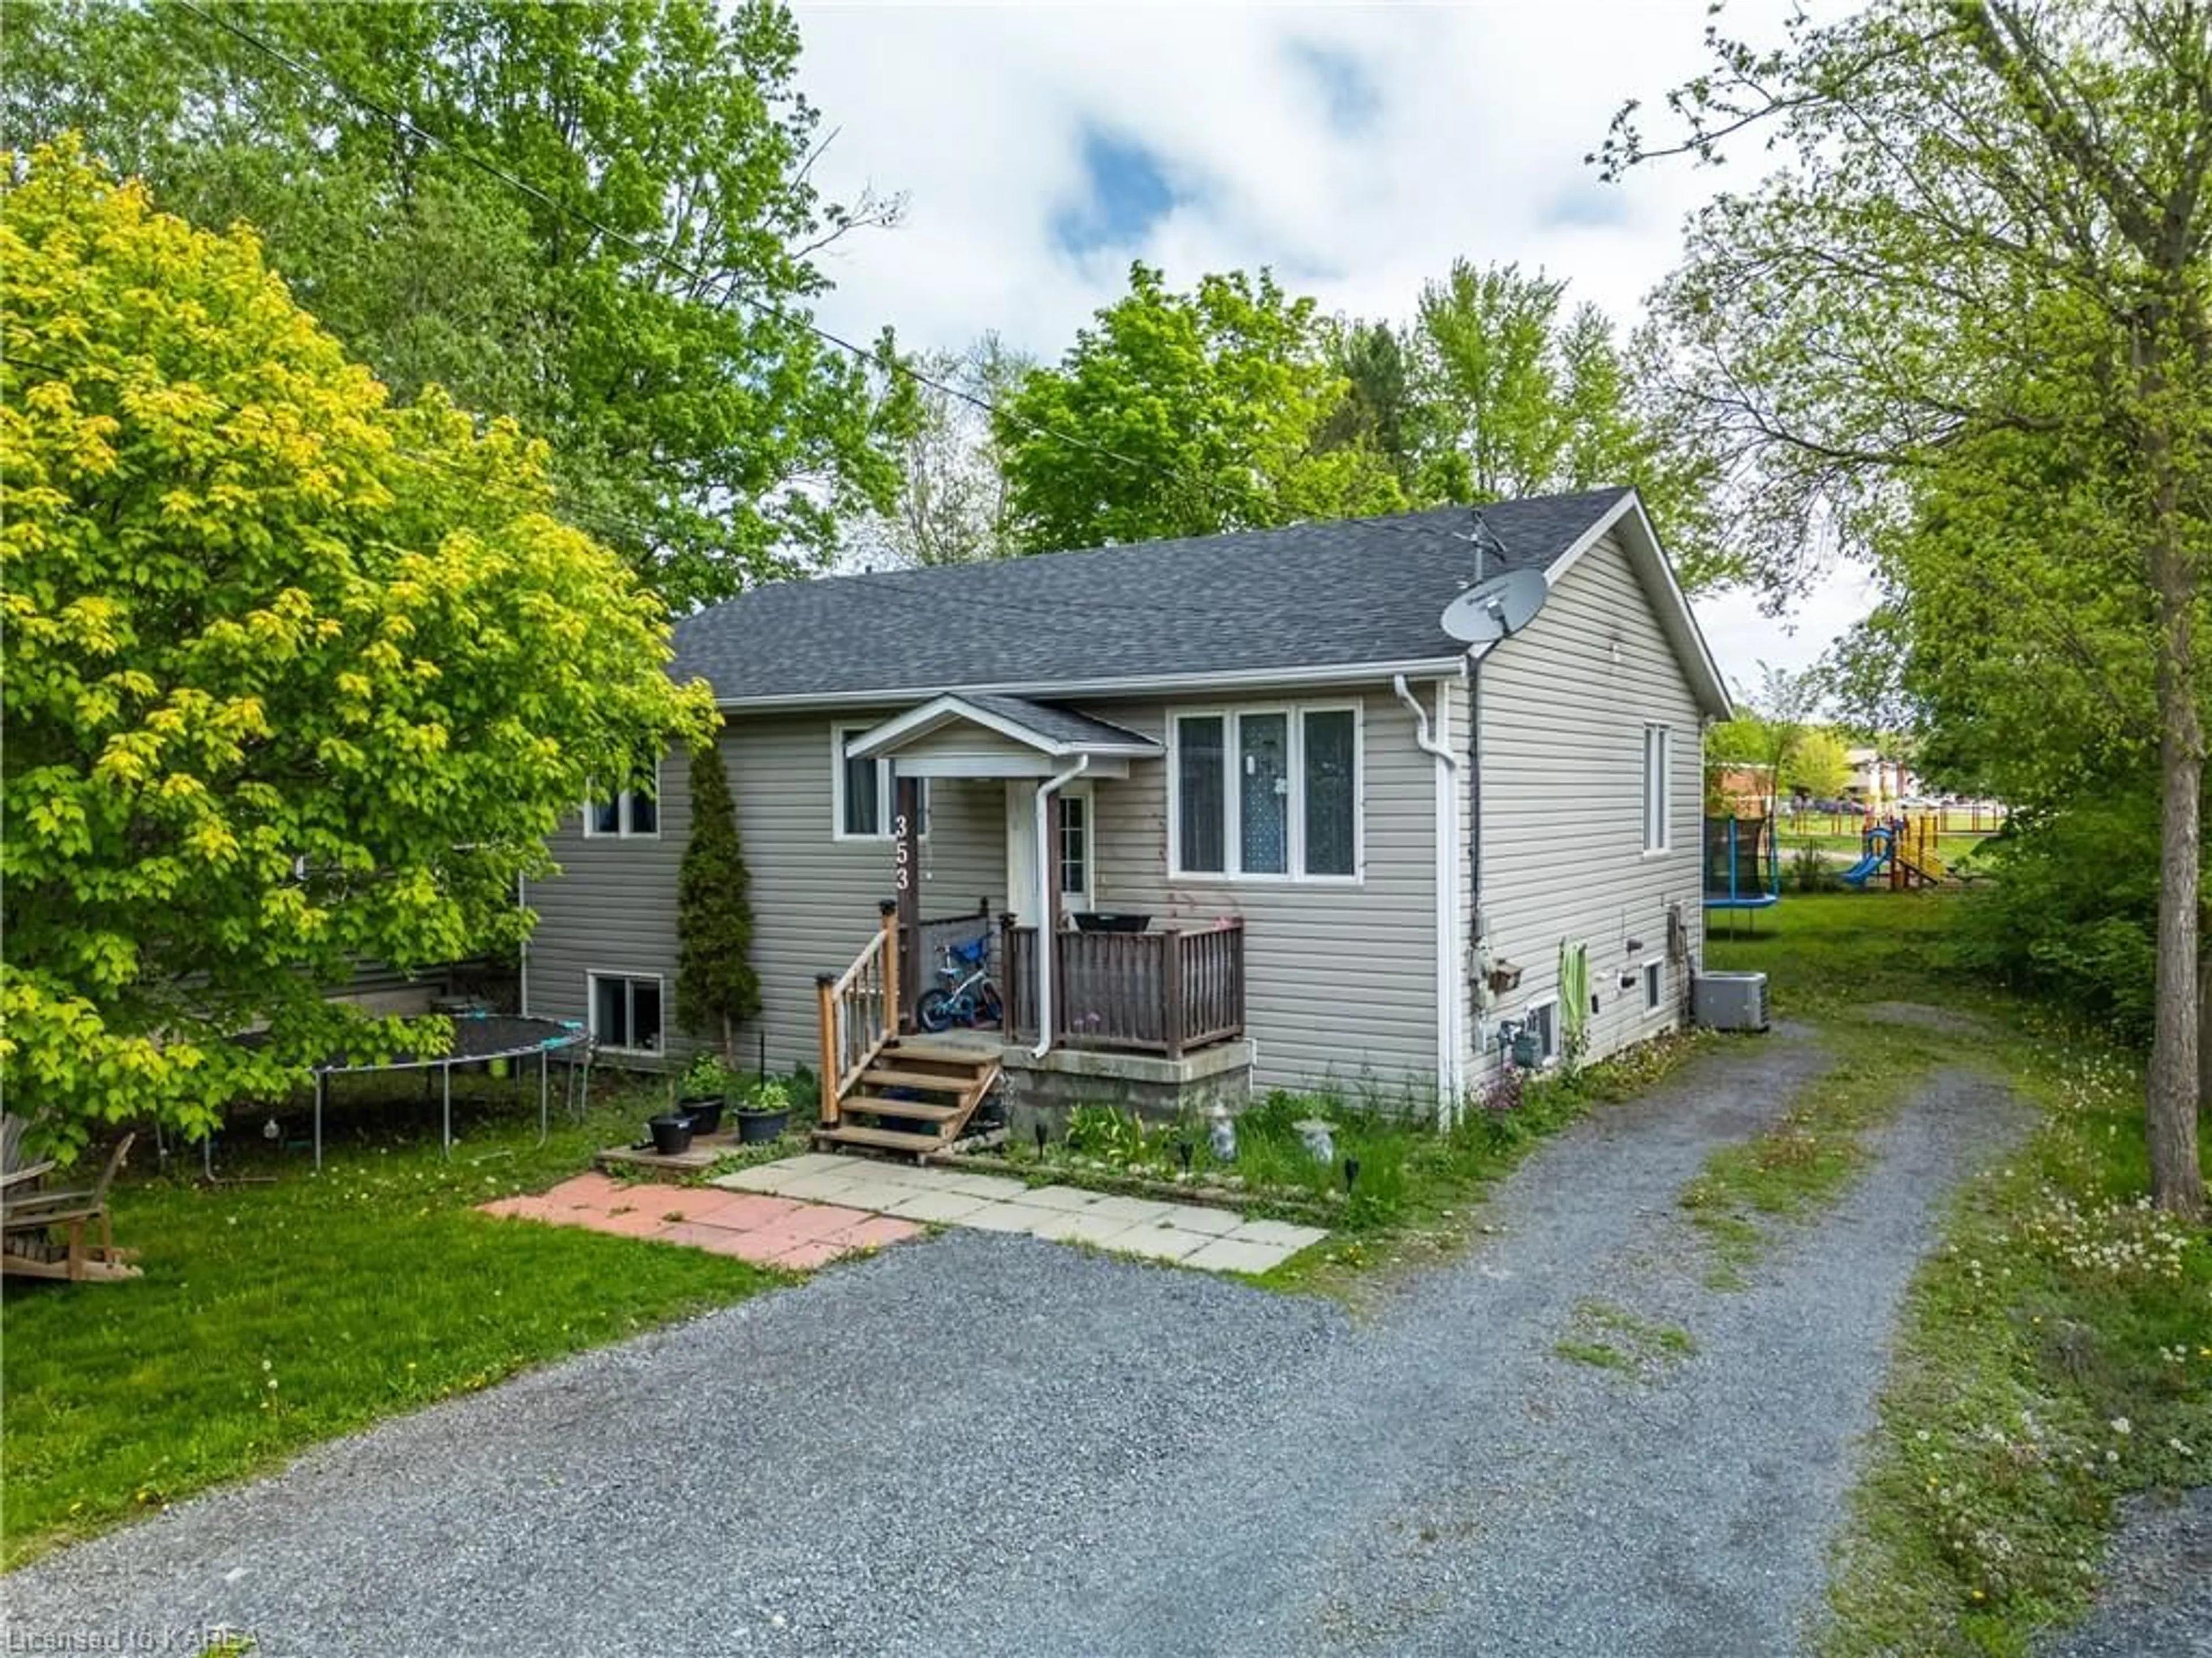 Cottage for 353 Charles St, Gananoque Ontario K7G 1V6